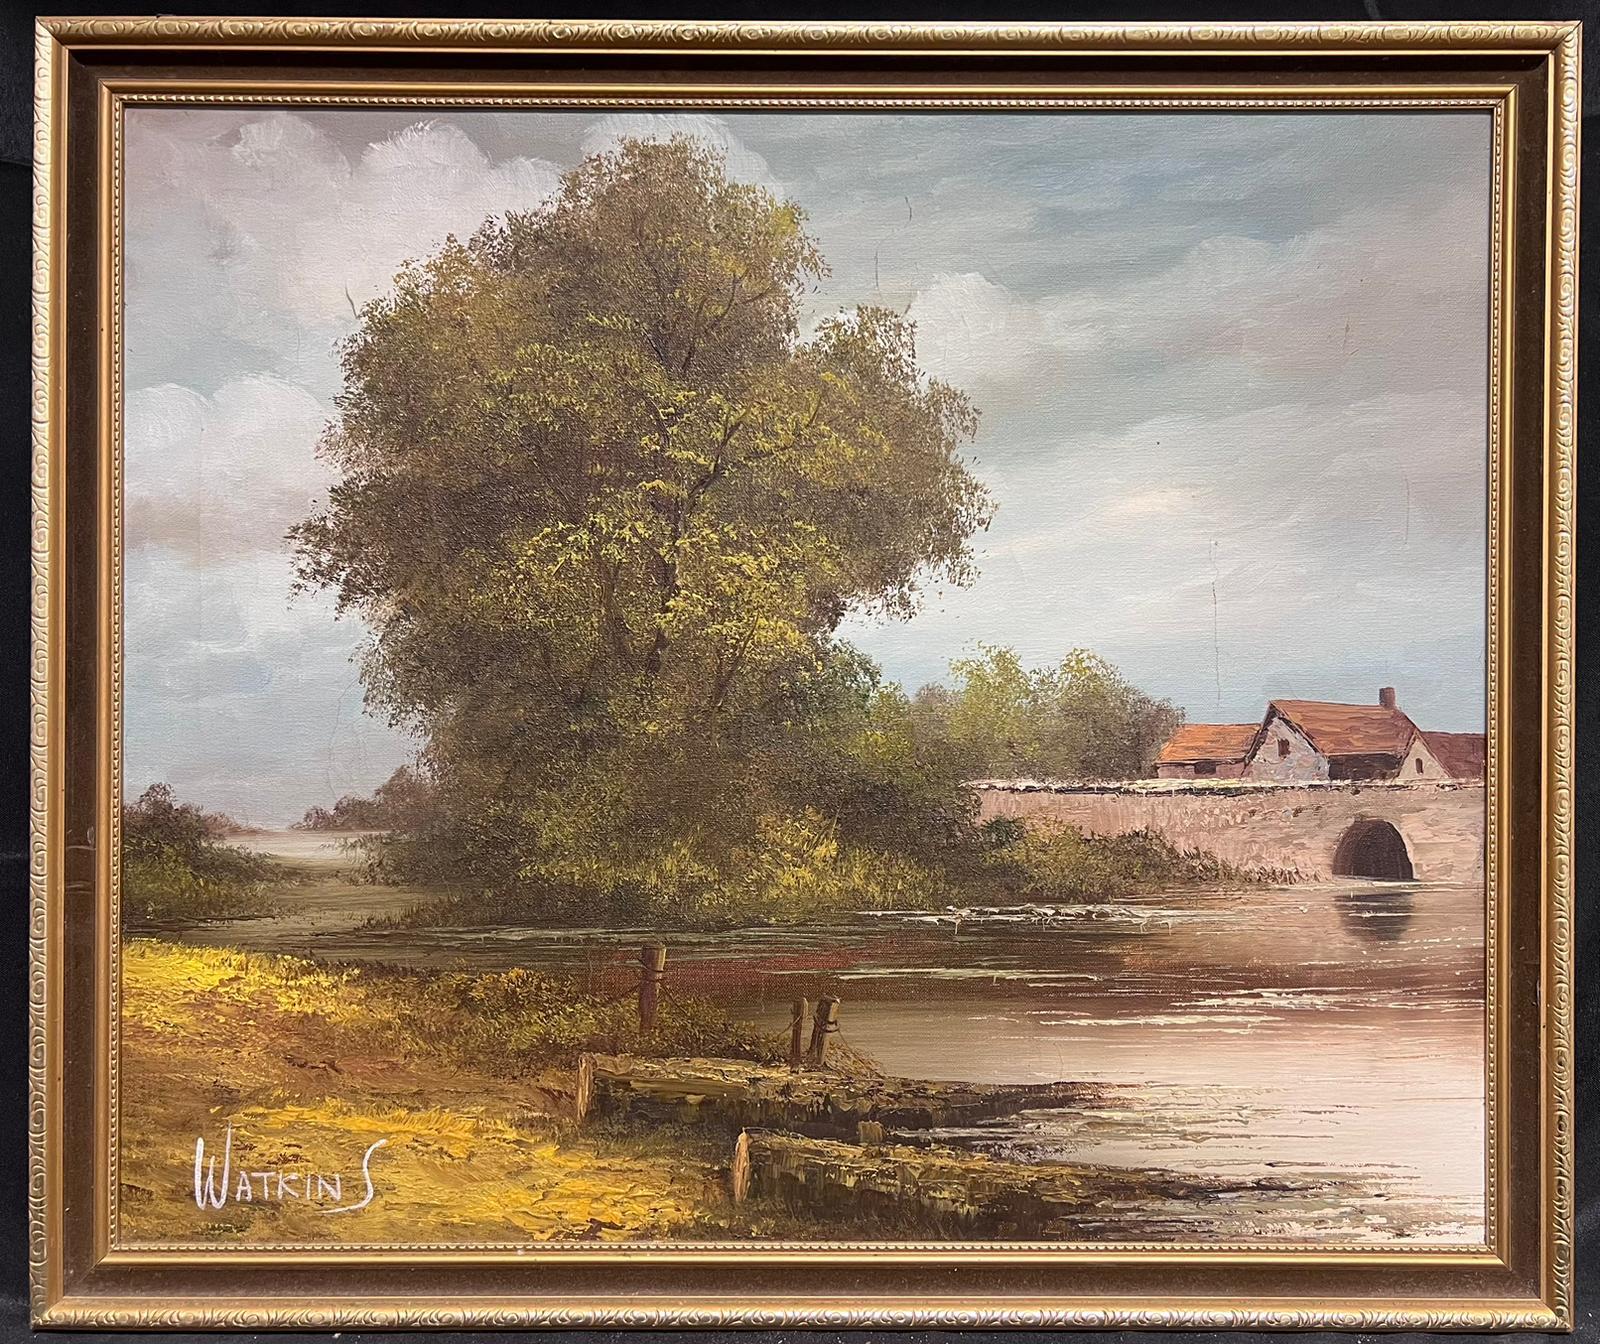 Peinture à l'huile sur toile Tranquil Rural English River Landscape signée